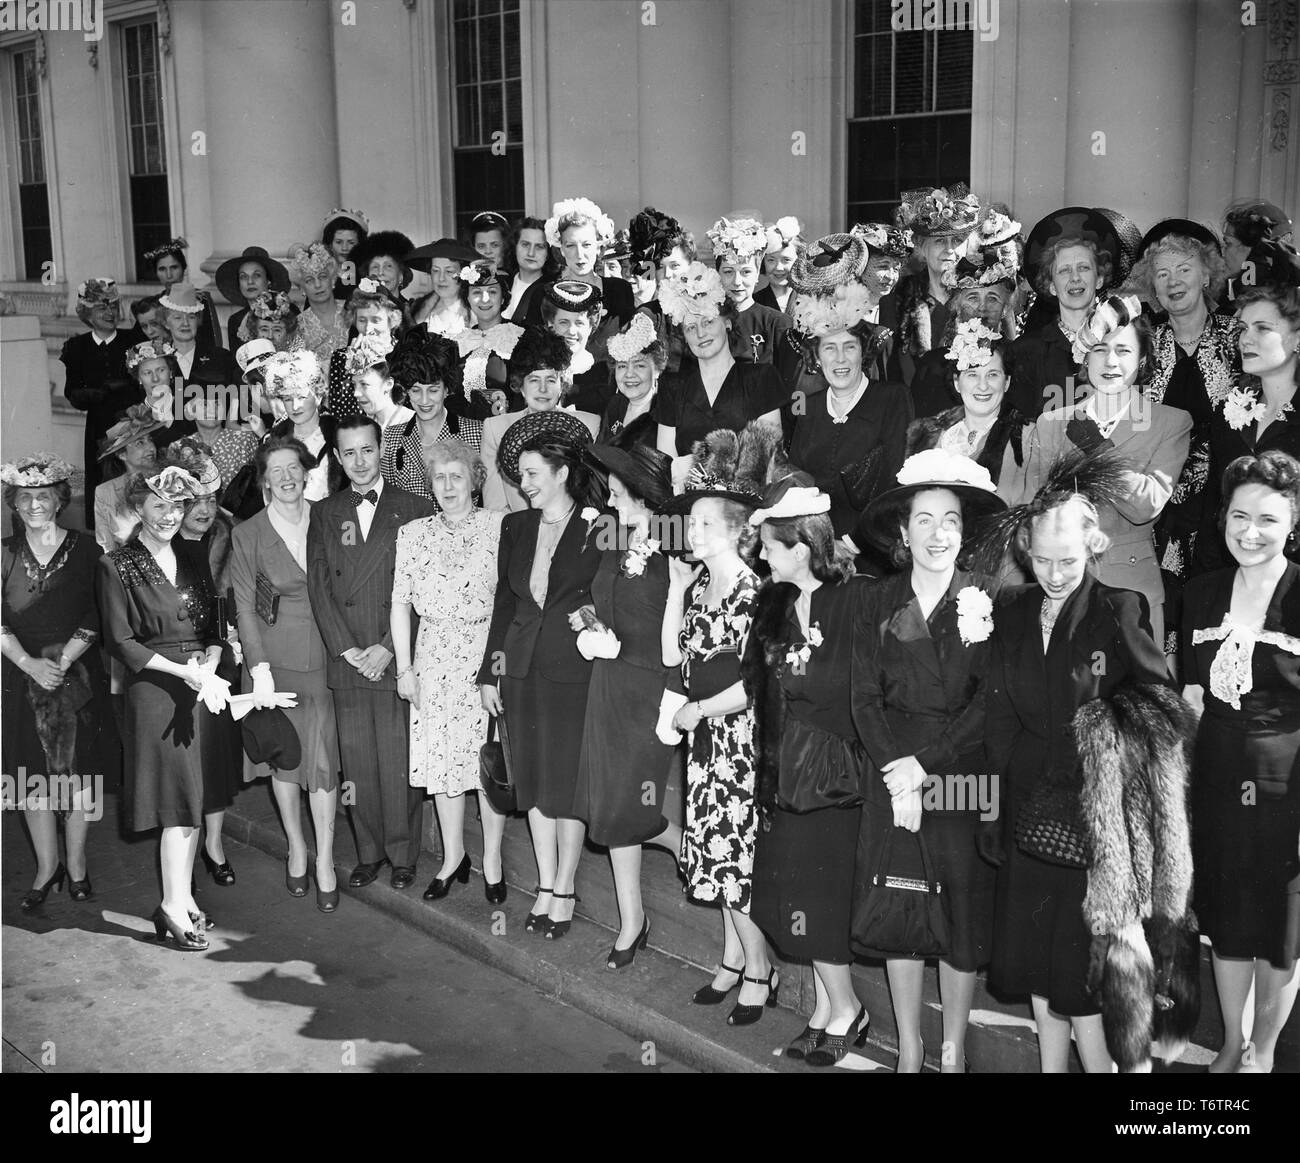 Il Professor Ramon Ramos e la First Lady Bess Truman stand con una folla di femmine della Casa Bianca i membri dello staff e le mogli di funzionari di governo, che ha partecipato a una classe di spagnolo presso la Casa Bianca di Washington, DC, 1950. Immagine cortesia archivi nazionali. () Foto Stock